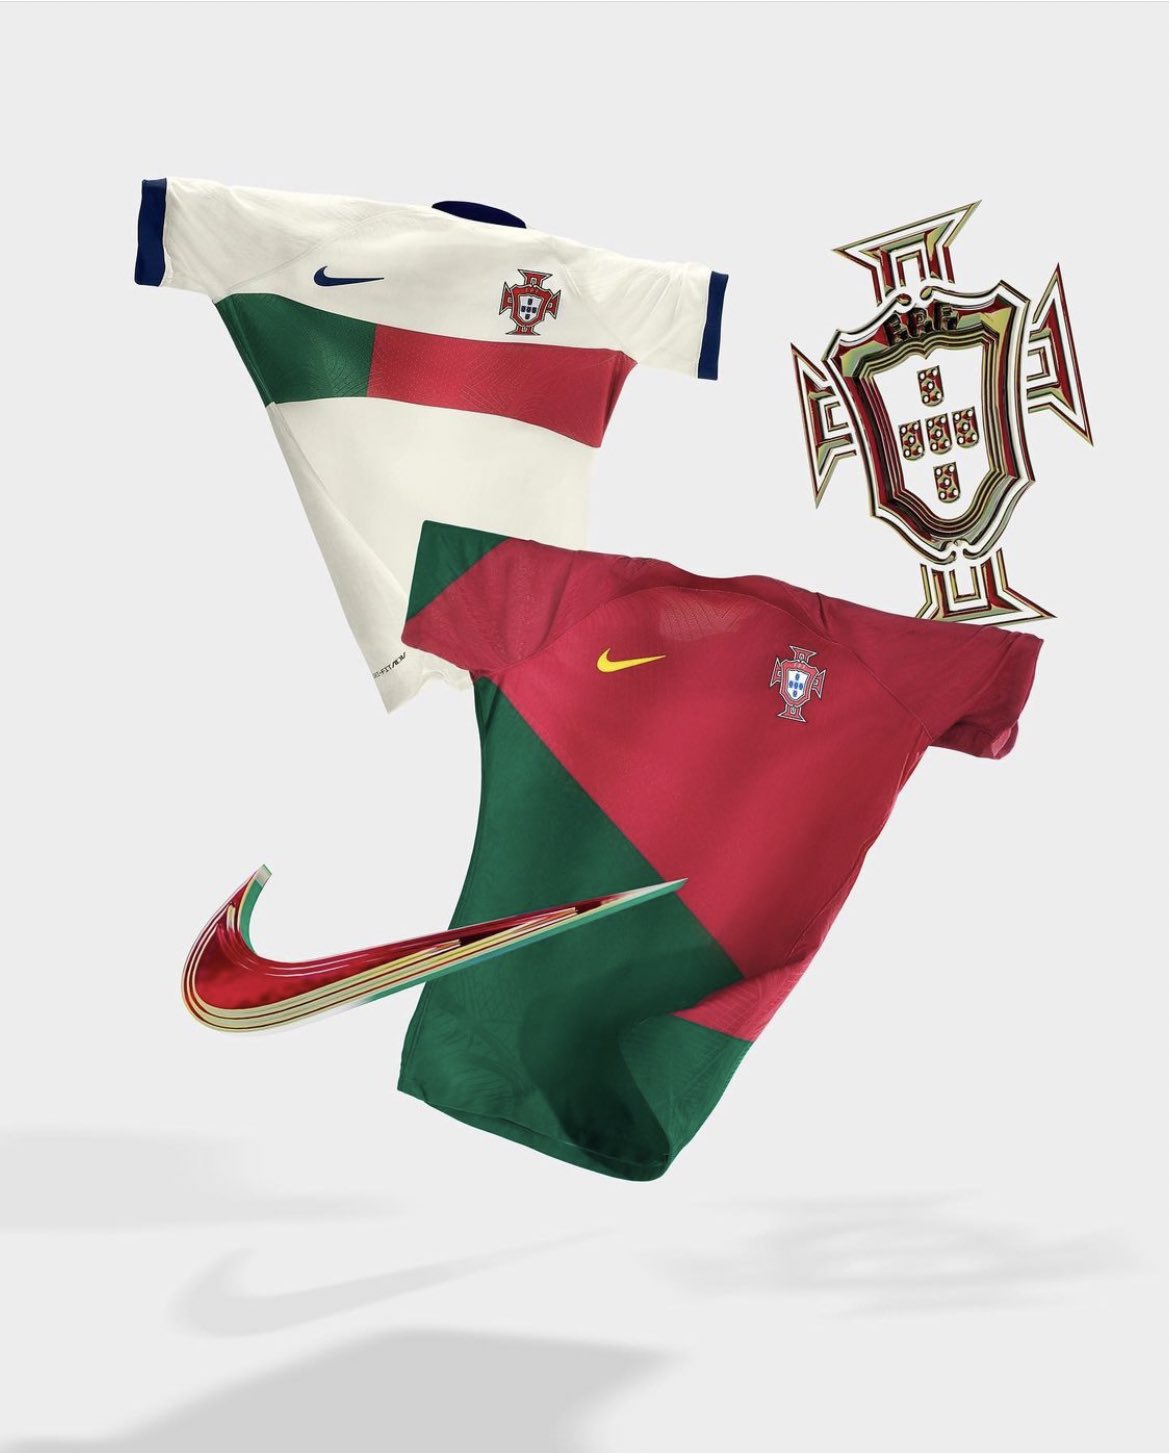 Camiseta titular y alternativa de Portugal para el Mundial de Qatar 2022